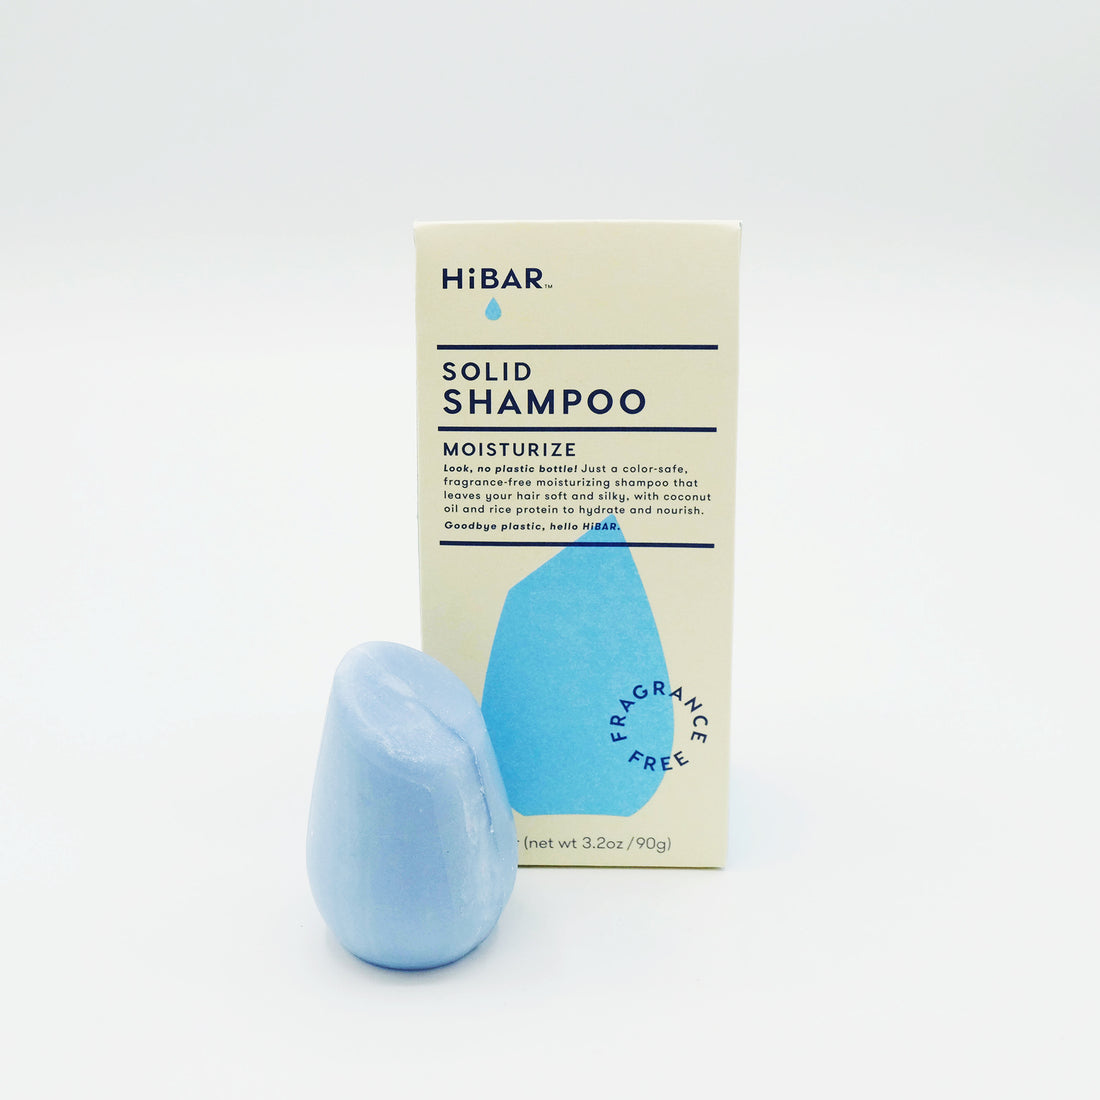 HiBAR shampoo bars